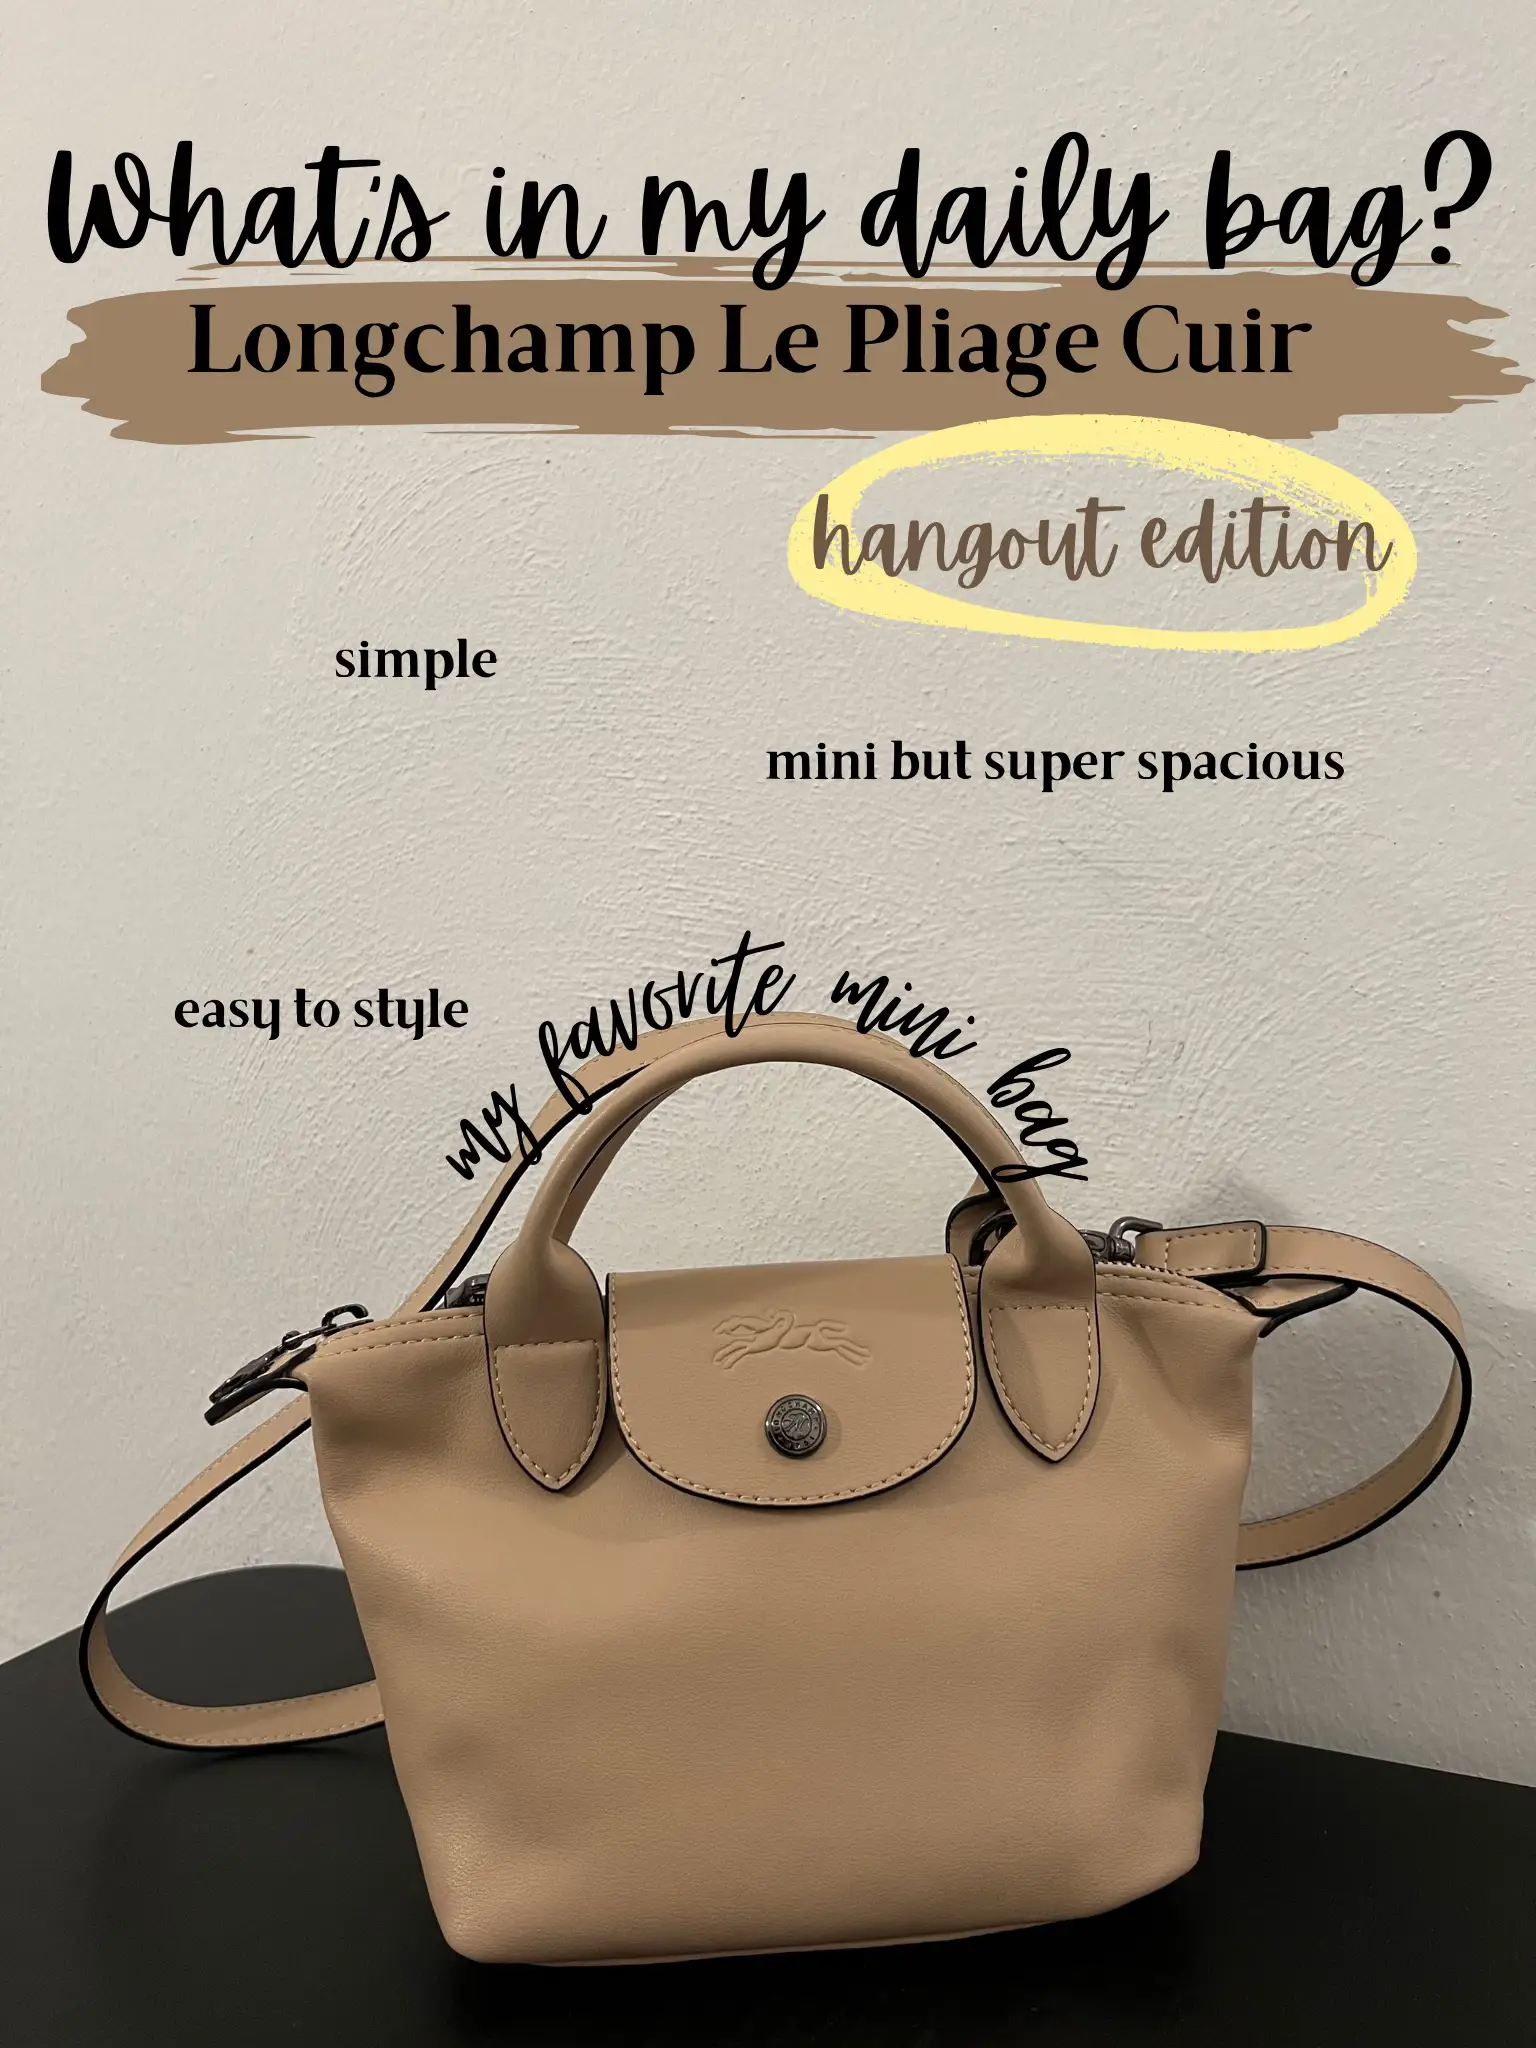 Love Louis Vuitton handbags? Try these 10 stylish lookalikes